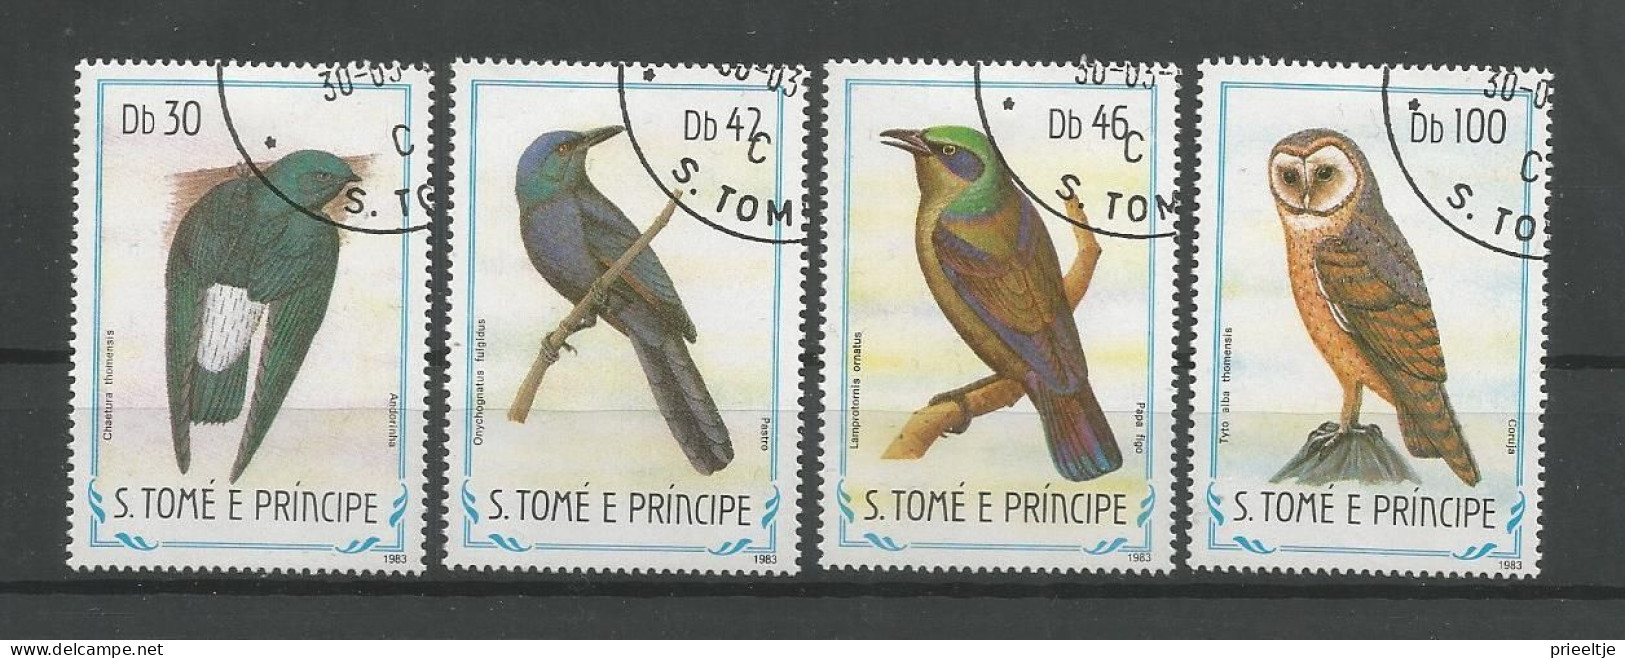 St Tome E Principe 1983 Birds Y.T. 792/795 (0) - Sao Tome And Principe